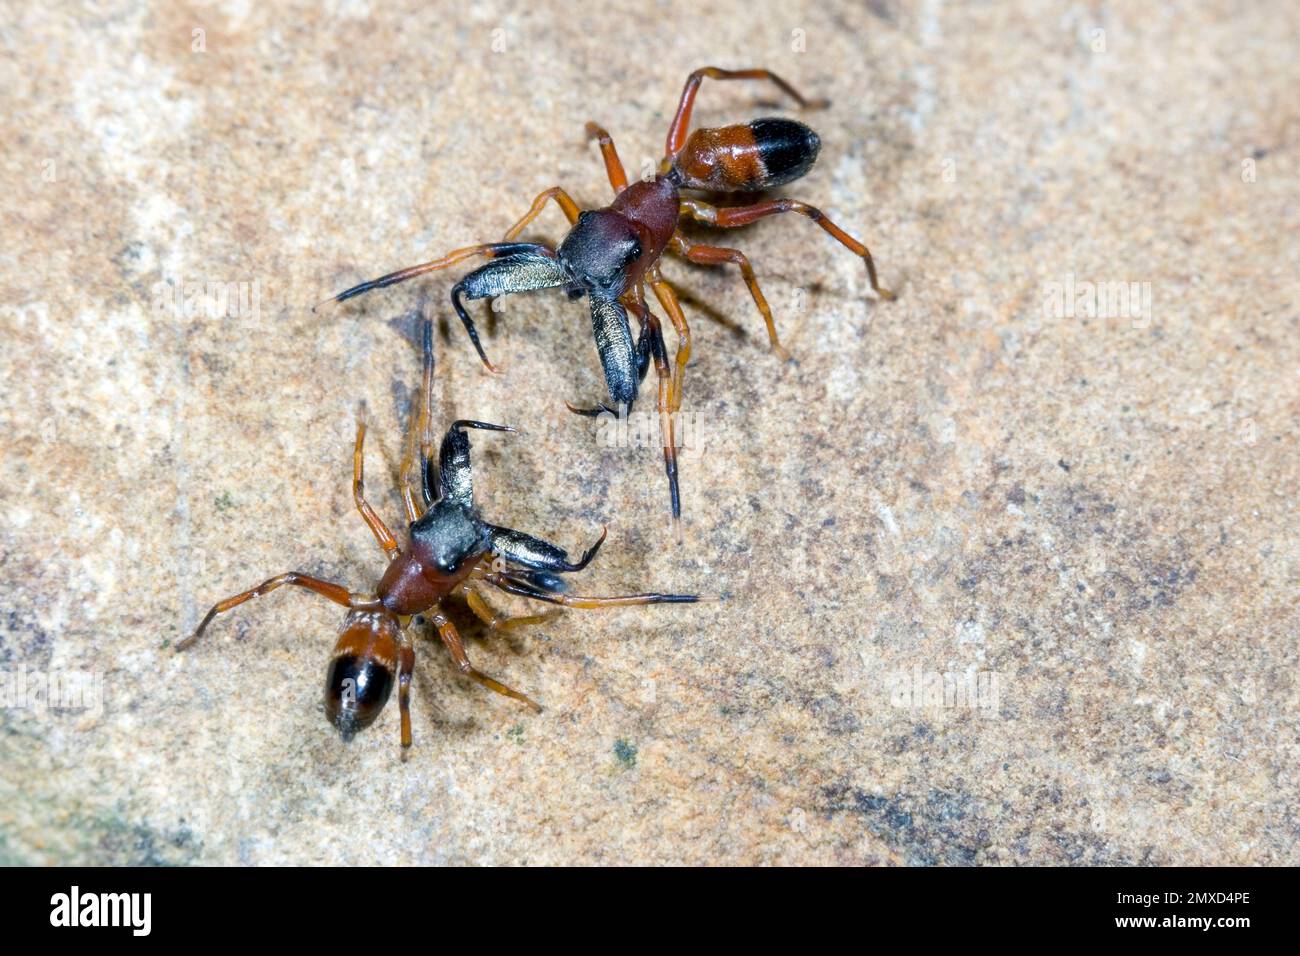 Araignée sauteuse ANT imite, araignée Ant (Myrmarachne formicaria), deux mâles dans le commentaire de combat, vue dorsale, Allemagne Banque D'Images